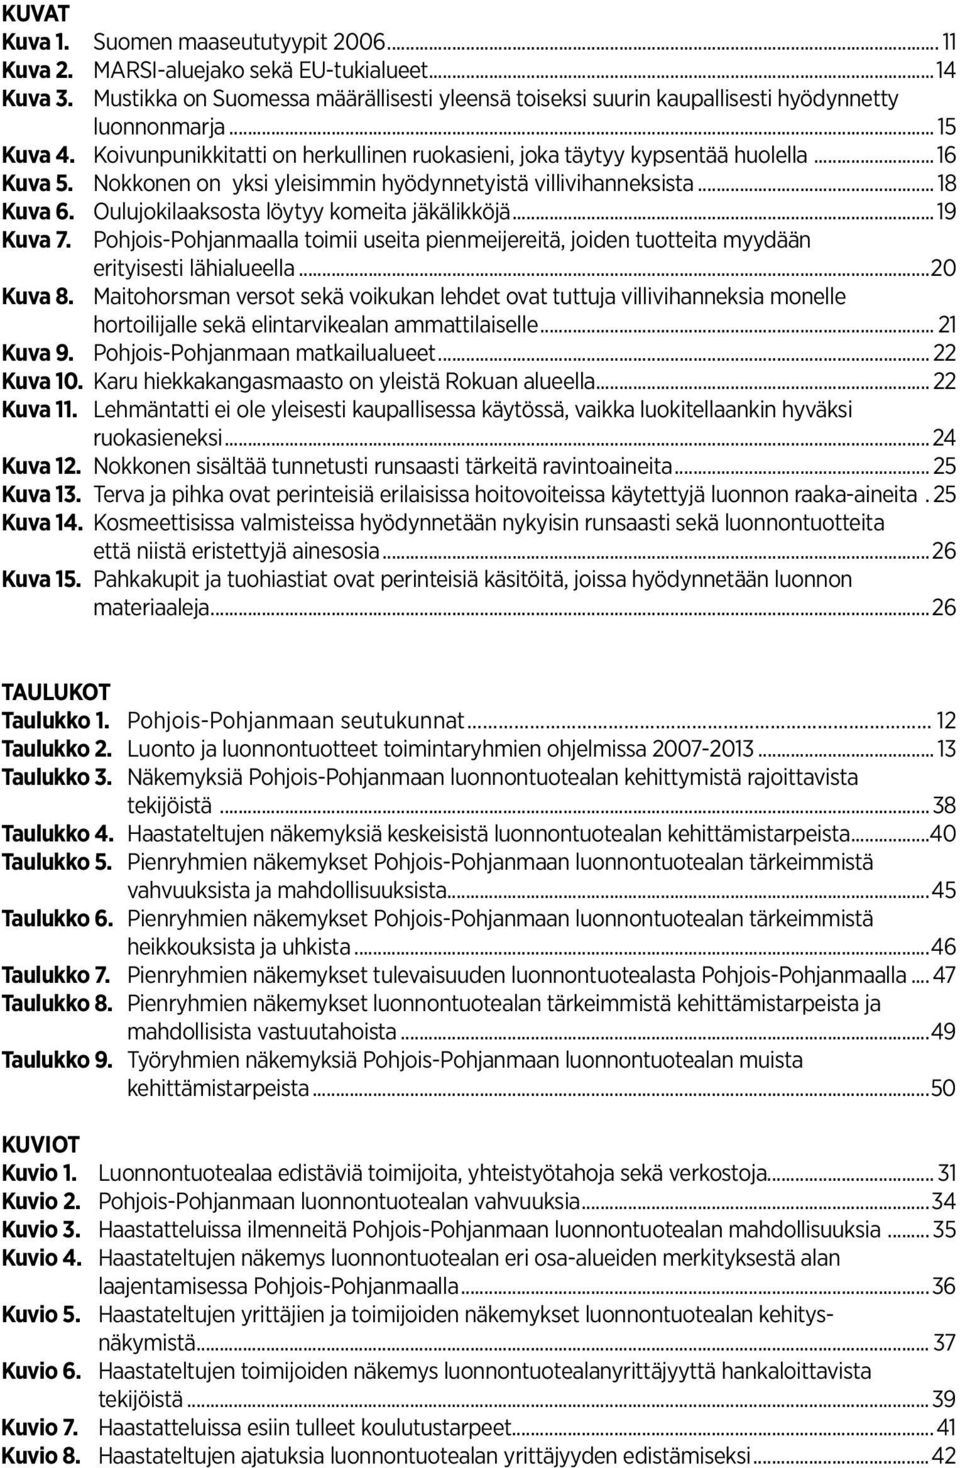 Oulujokilaaksosta löytyy komeita jäkälikköjä...19 Kuva 7. Pohjois-Pohjanmaalla toimii useita pienmeijereitä, joiden tuotteita myydään erityisesti lähialueella...20 Kuva 8.